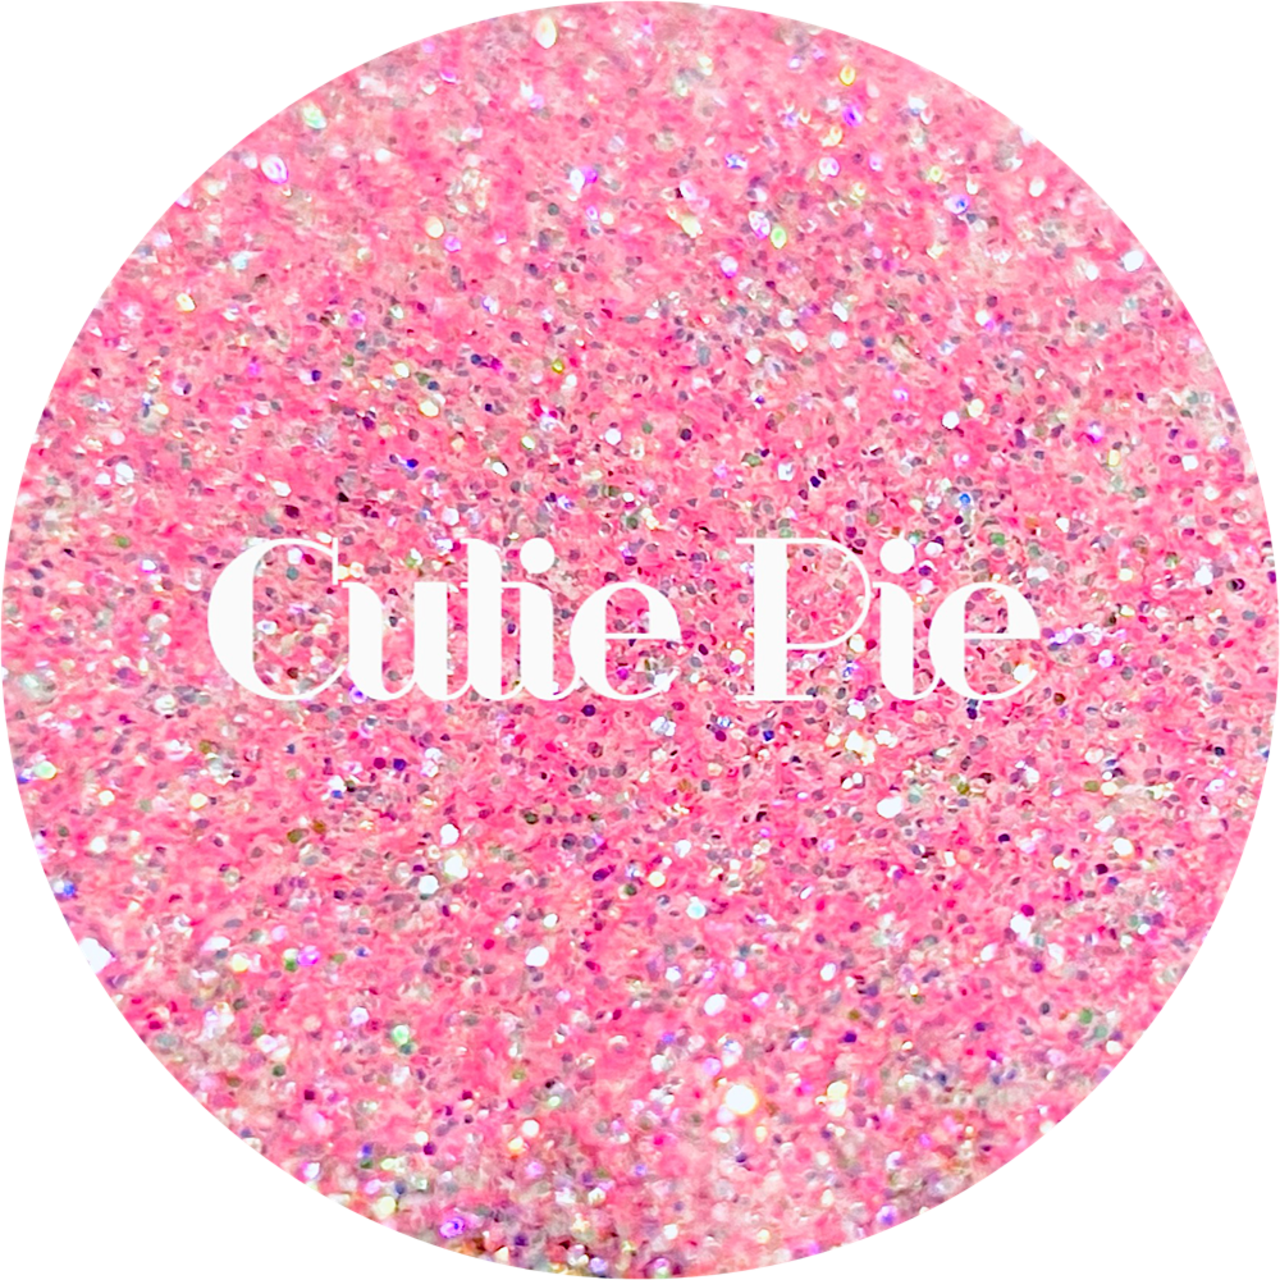 Polyester Glitter -Cutie Pie  by Glitter Heart Co.&#x2122;